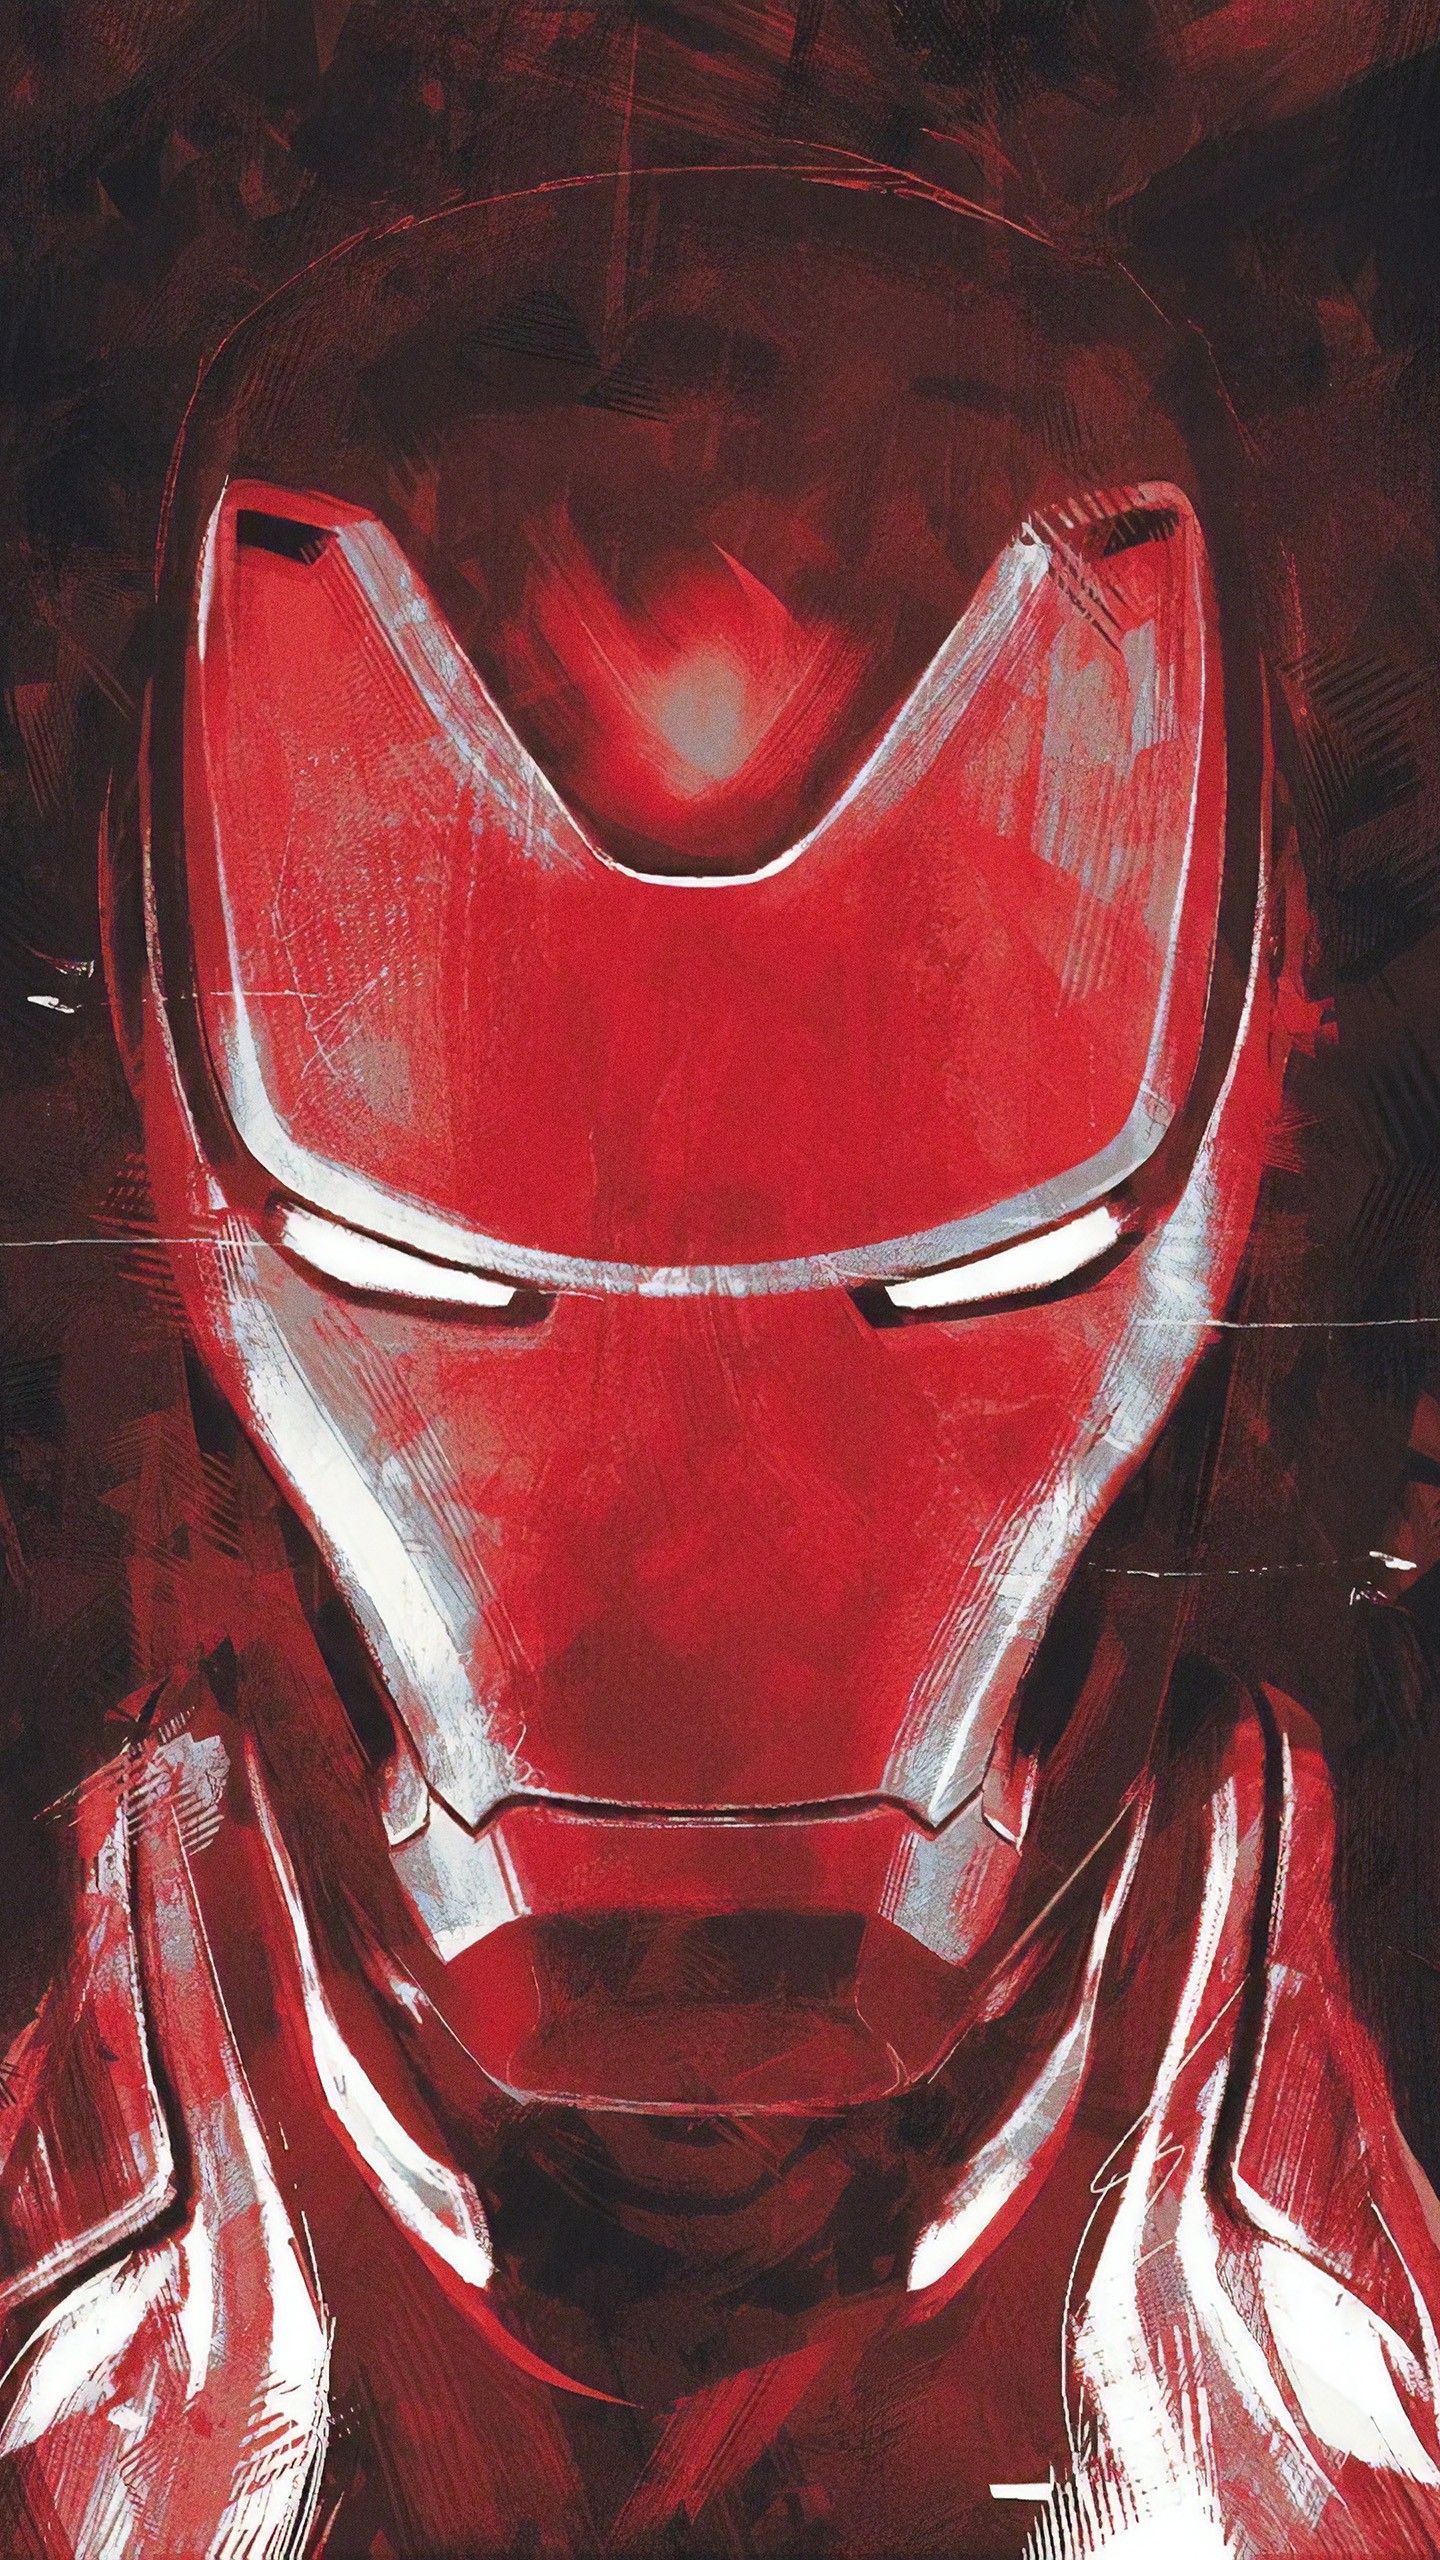 Avengers Endgame Wallpaper iPhone X Stream 4K Online